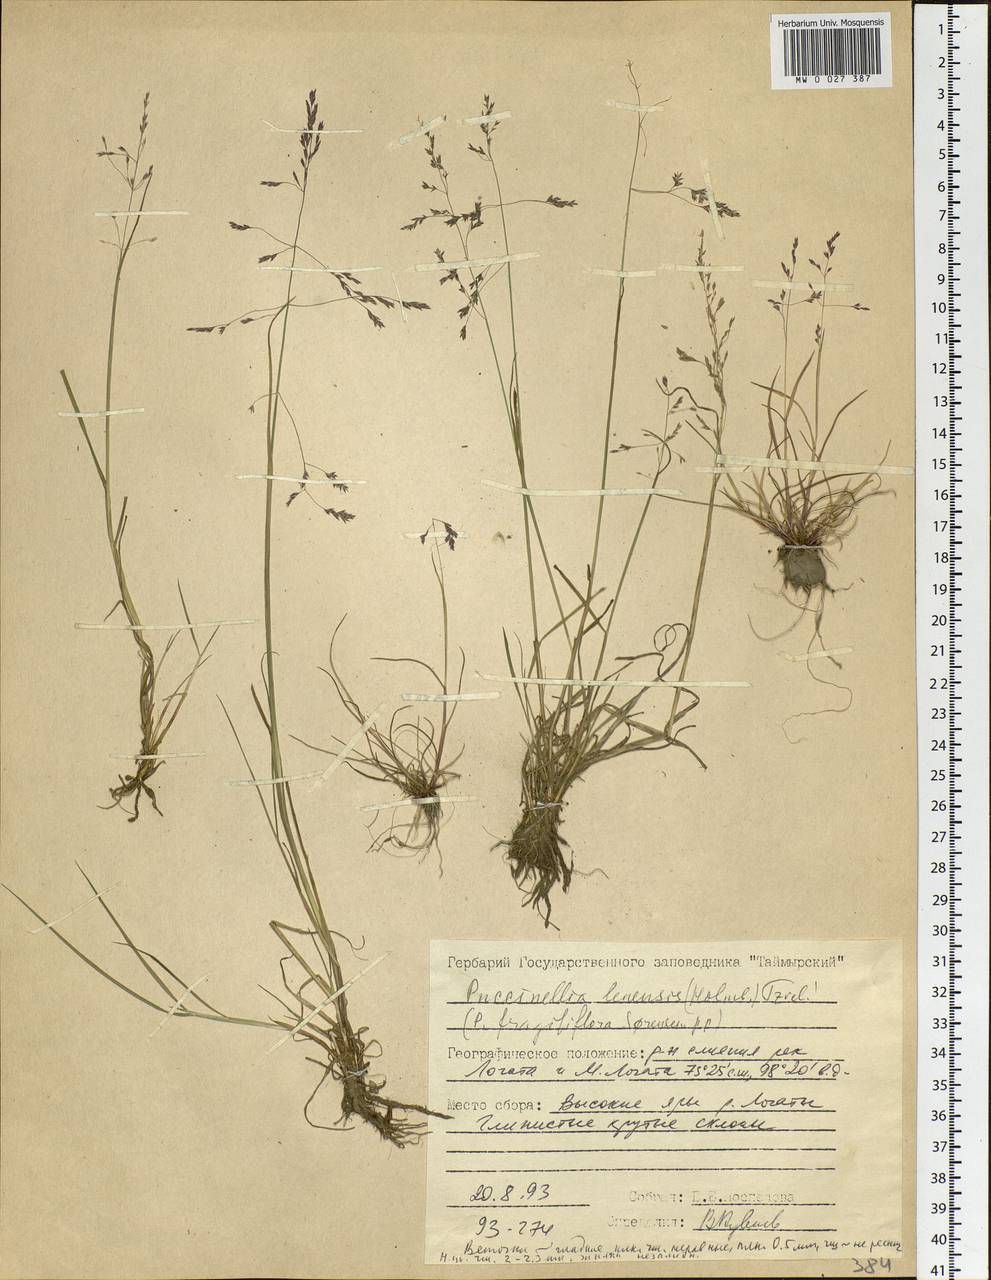 Puccinellia lenensis (Holmb.) Tzvelev, Siberia, Central Siberia (S3) (Russia)